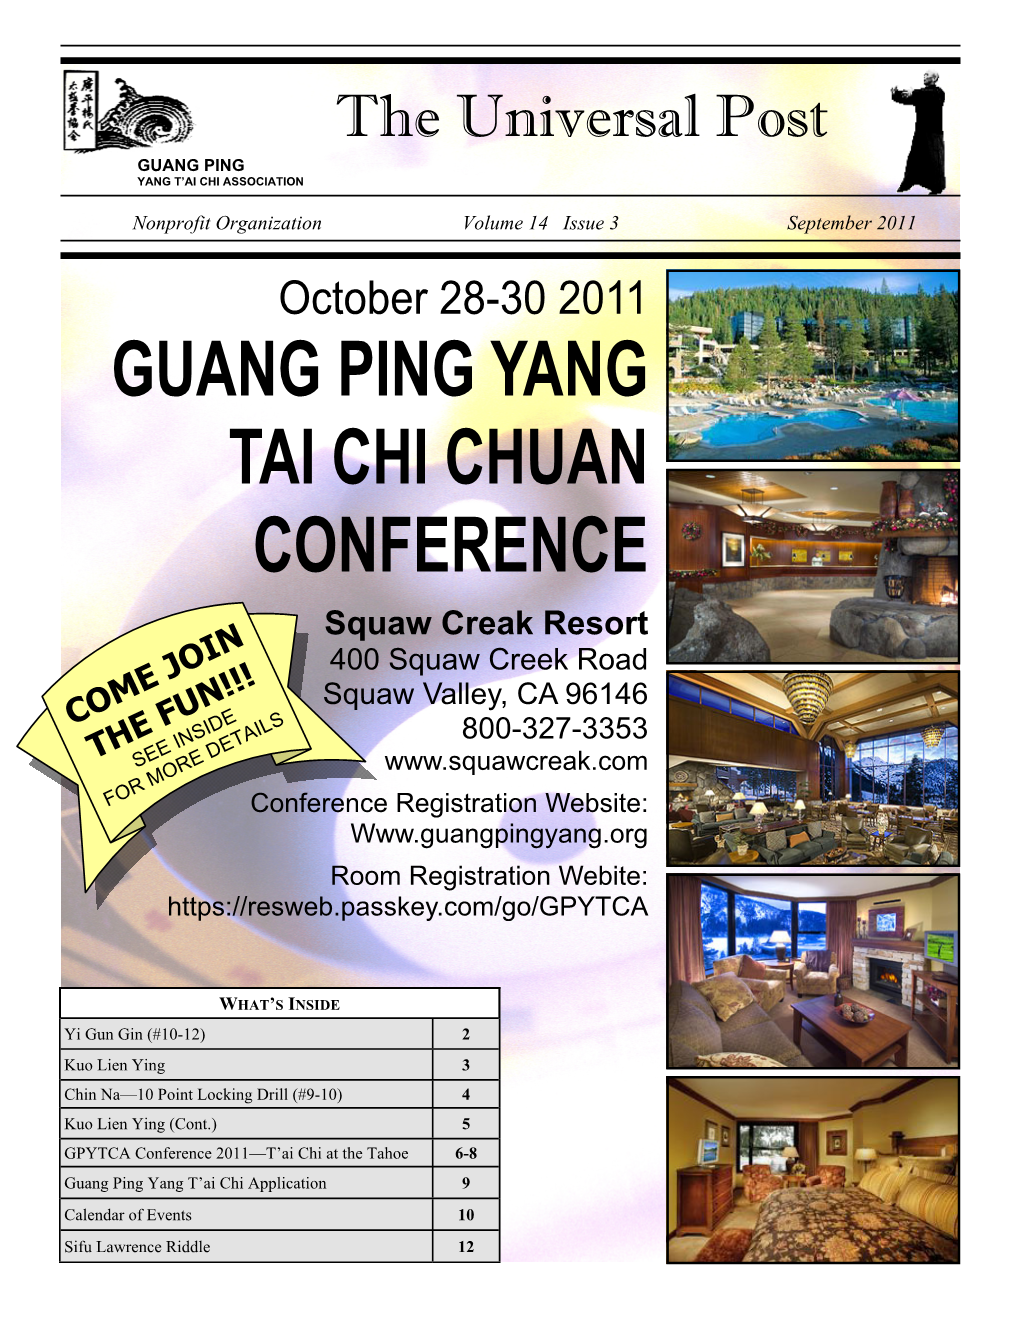 Guang Ping Yang Tai Chi Chuan Conference